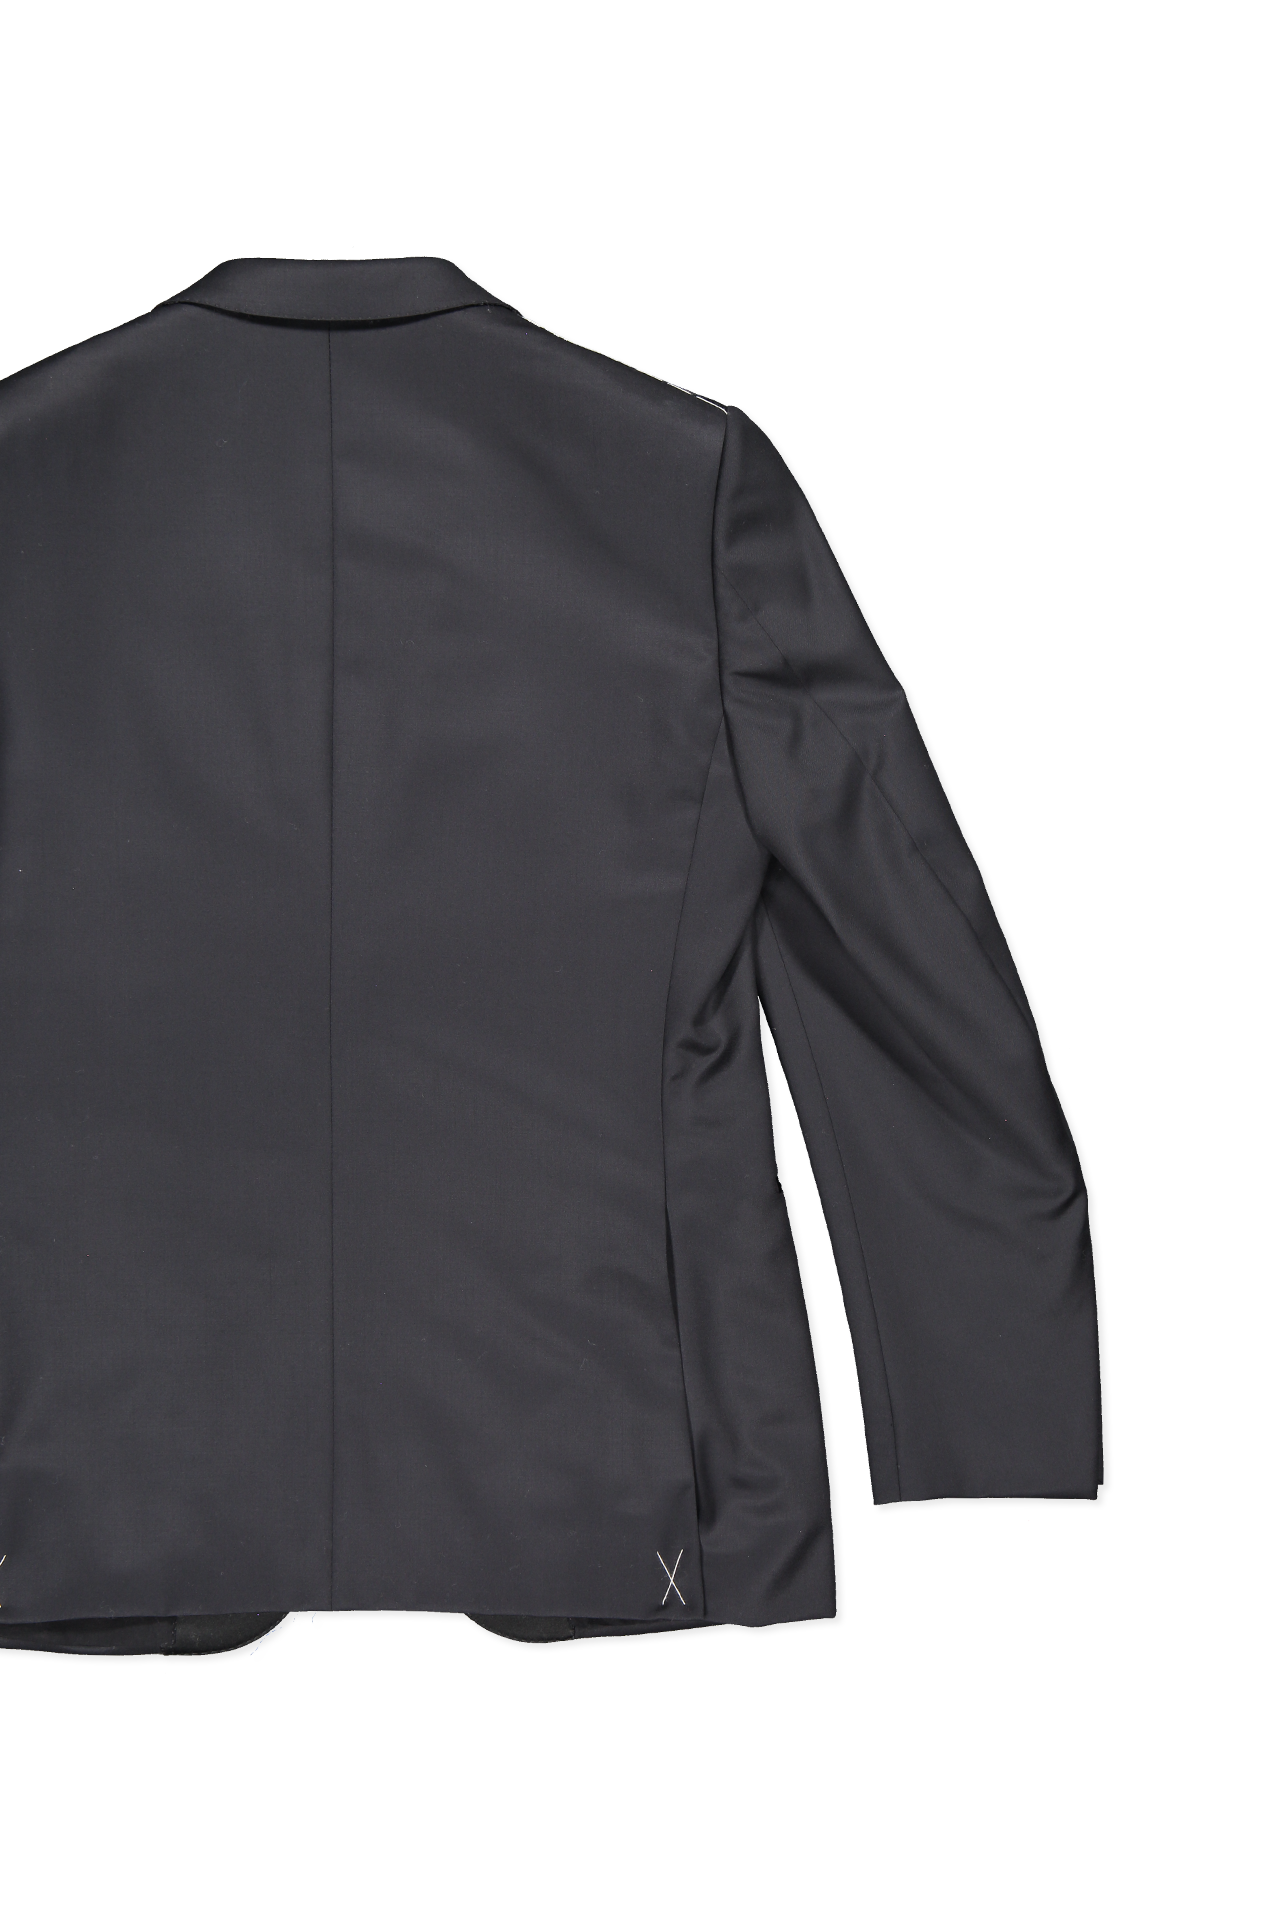 Zegna Micronsphere Tuxedo Black Back Flat Image (4371186450547)